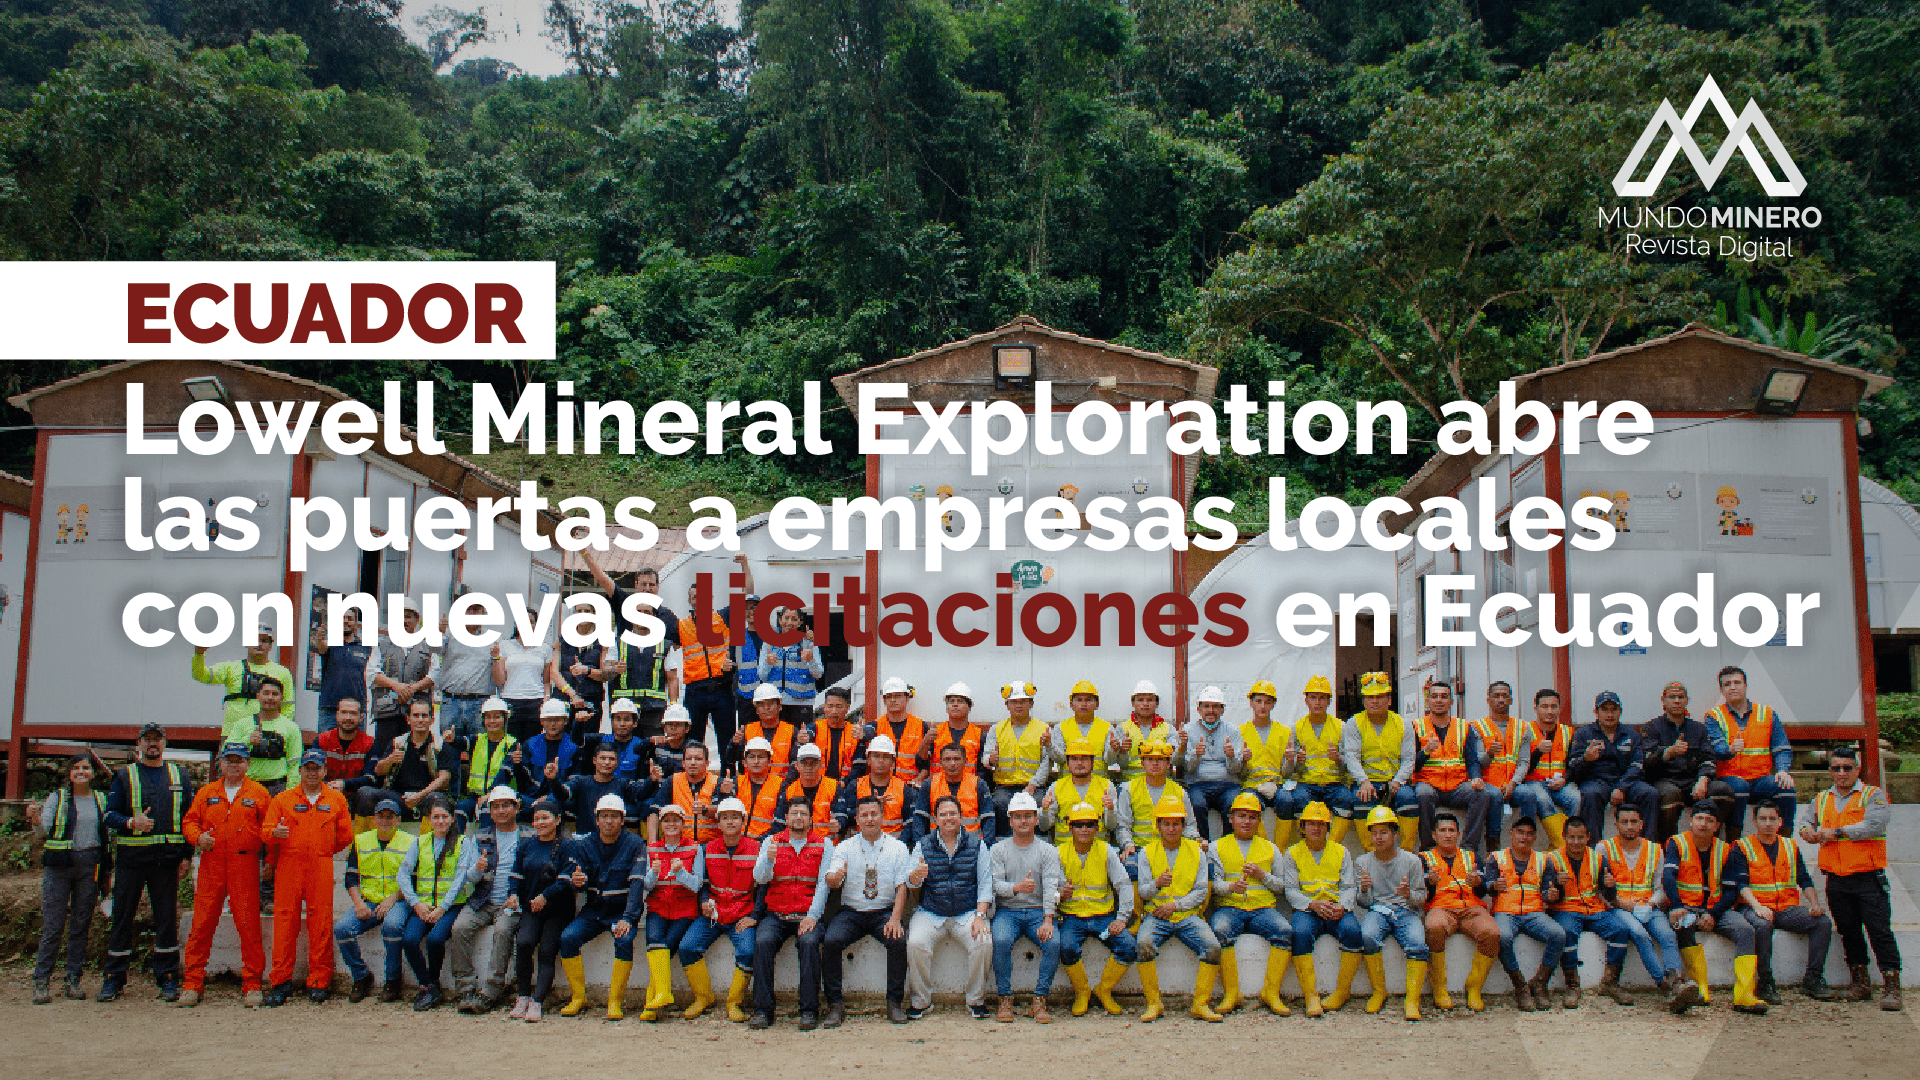 Lowell Mineral Exploration abre las puertas a empresas locales con nuevas licitaciones en Ecuador